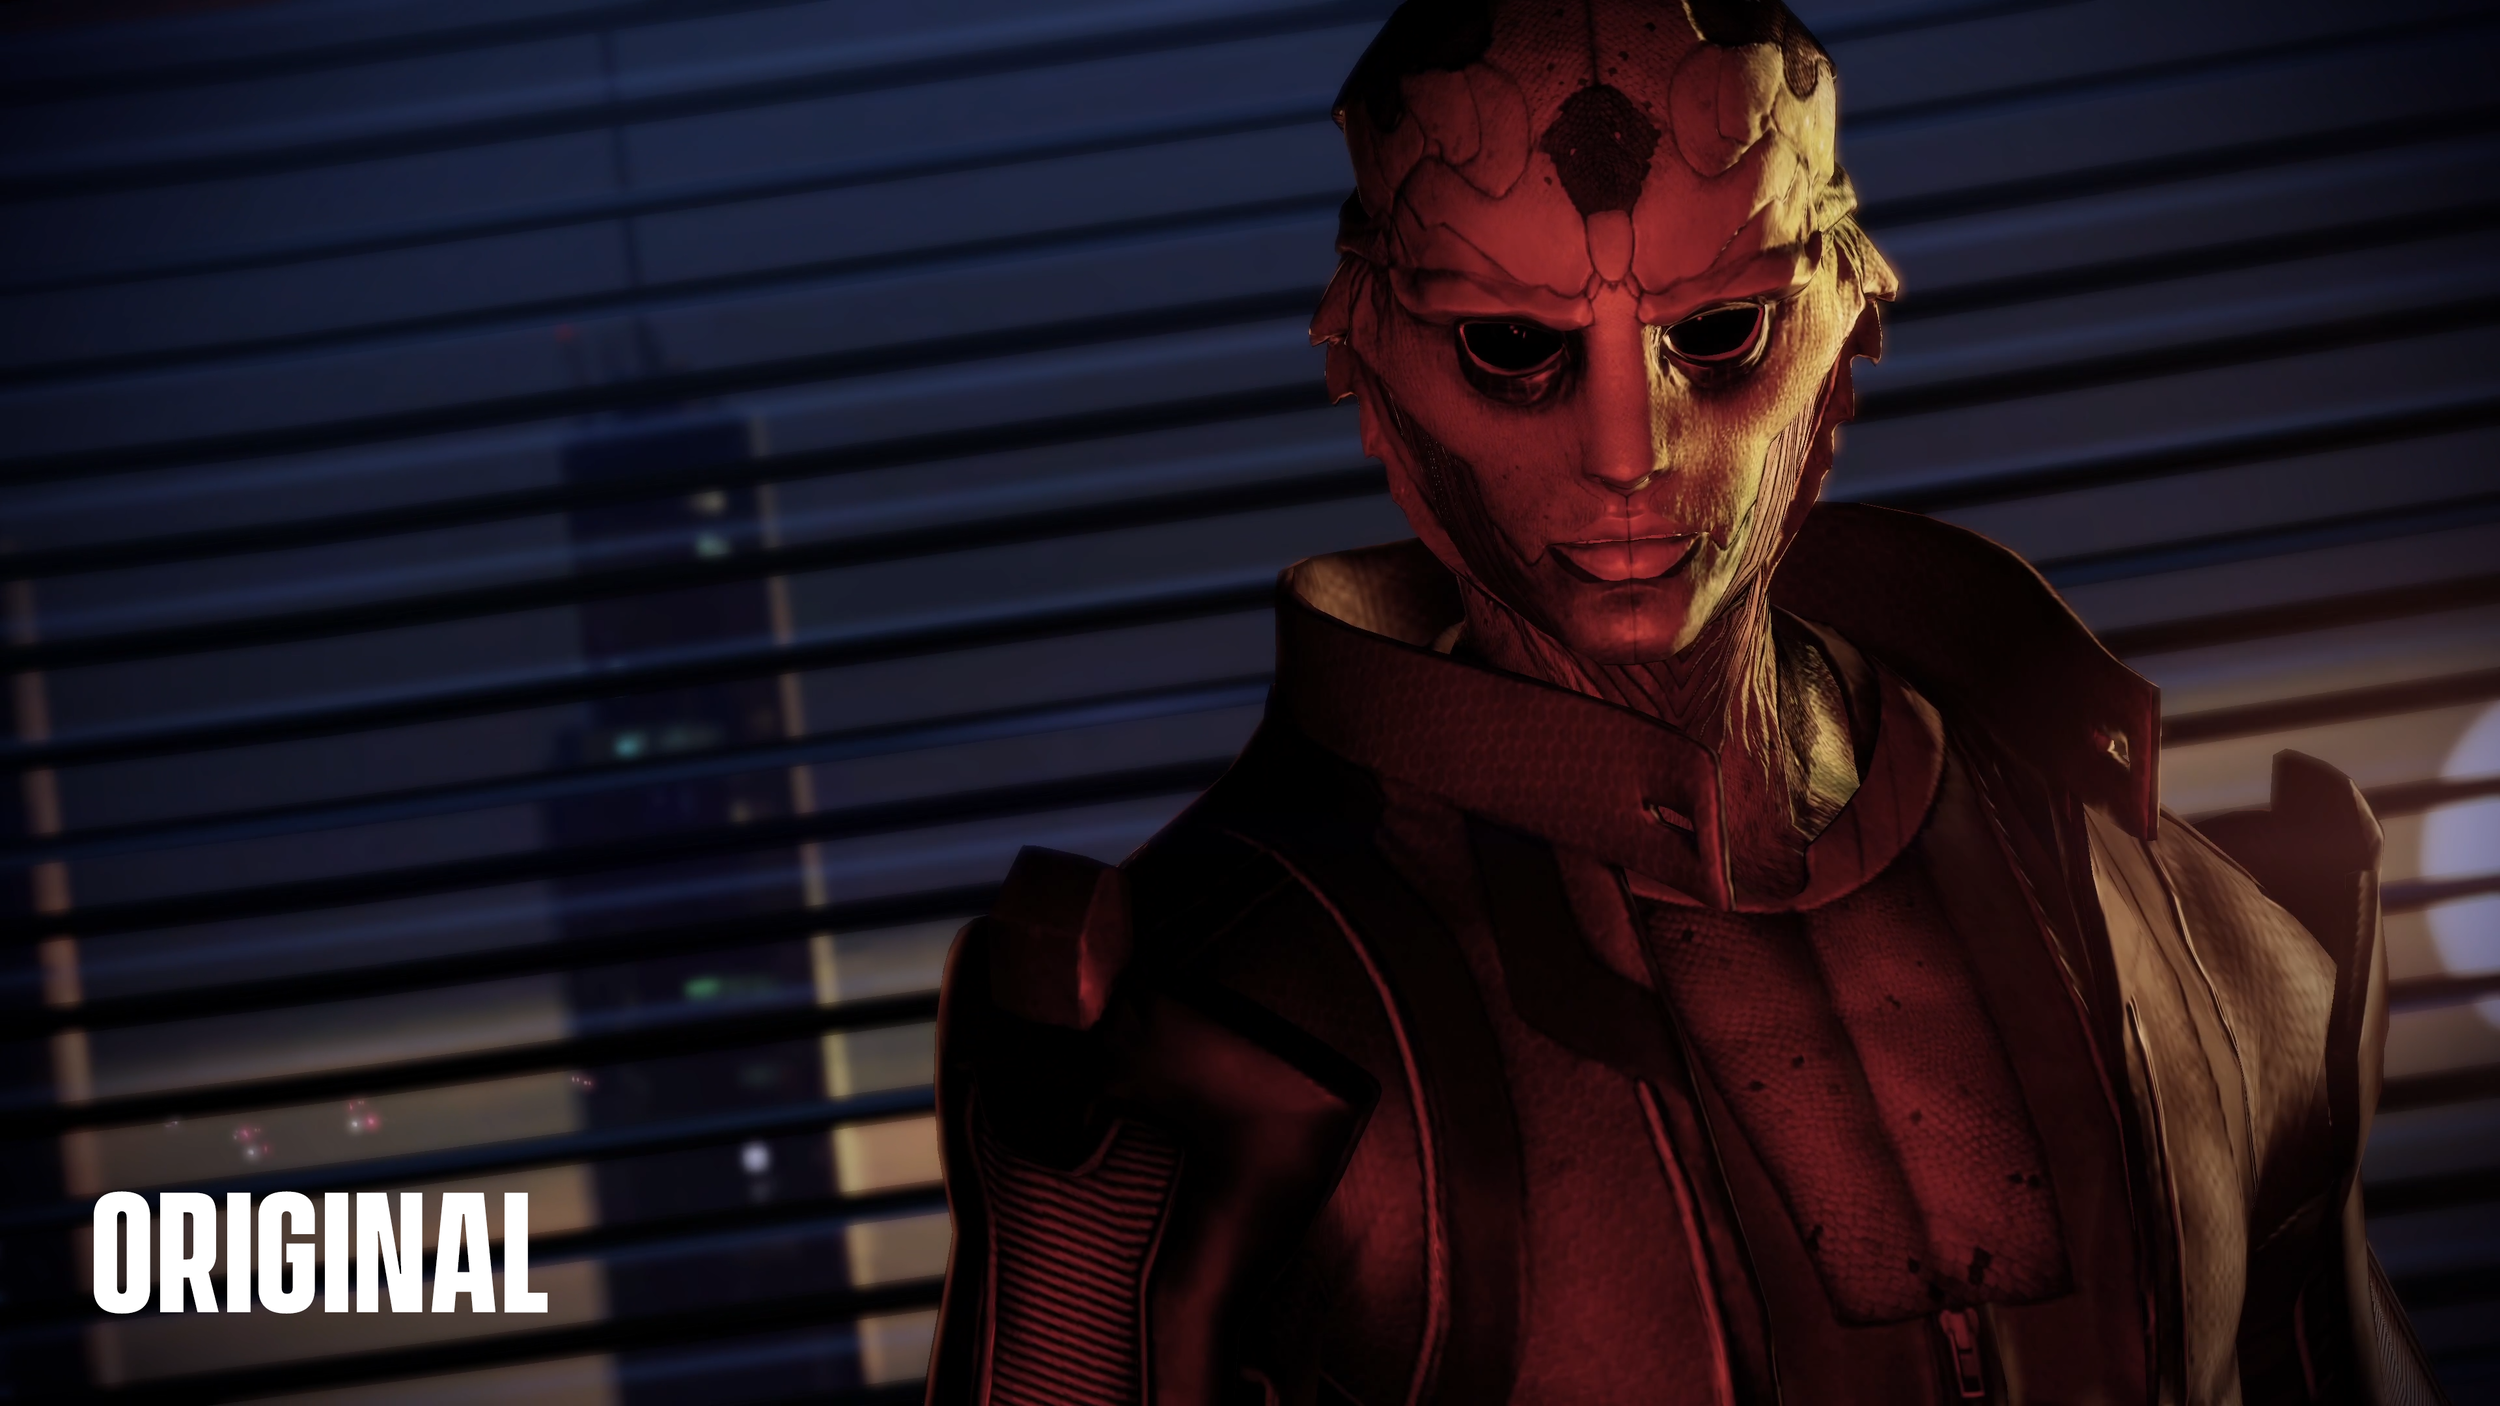 Mass Effect_THANE_3840x2160_ORIGINAL.png